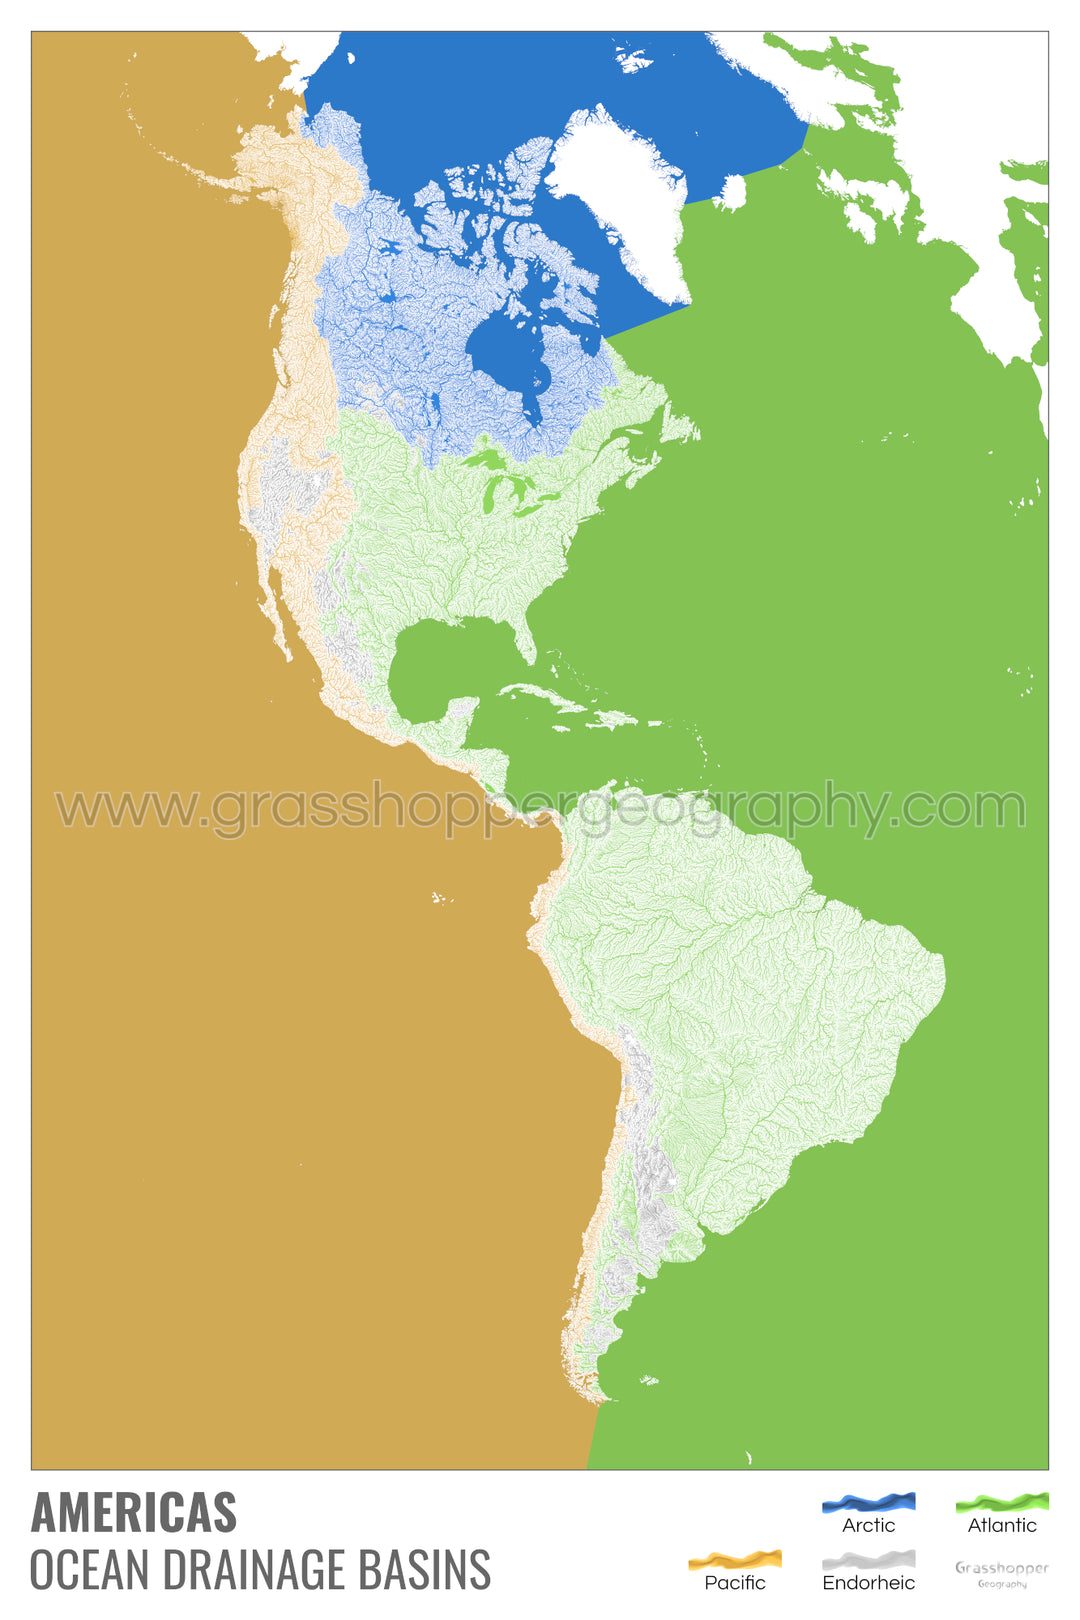 Les Amériques - Carte des bassins versants océaniques, blanche avec légende v2 - Tirage d'art avec cintre